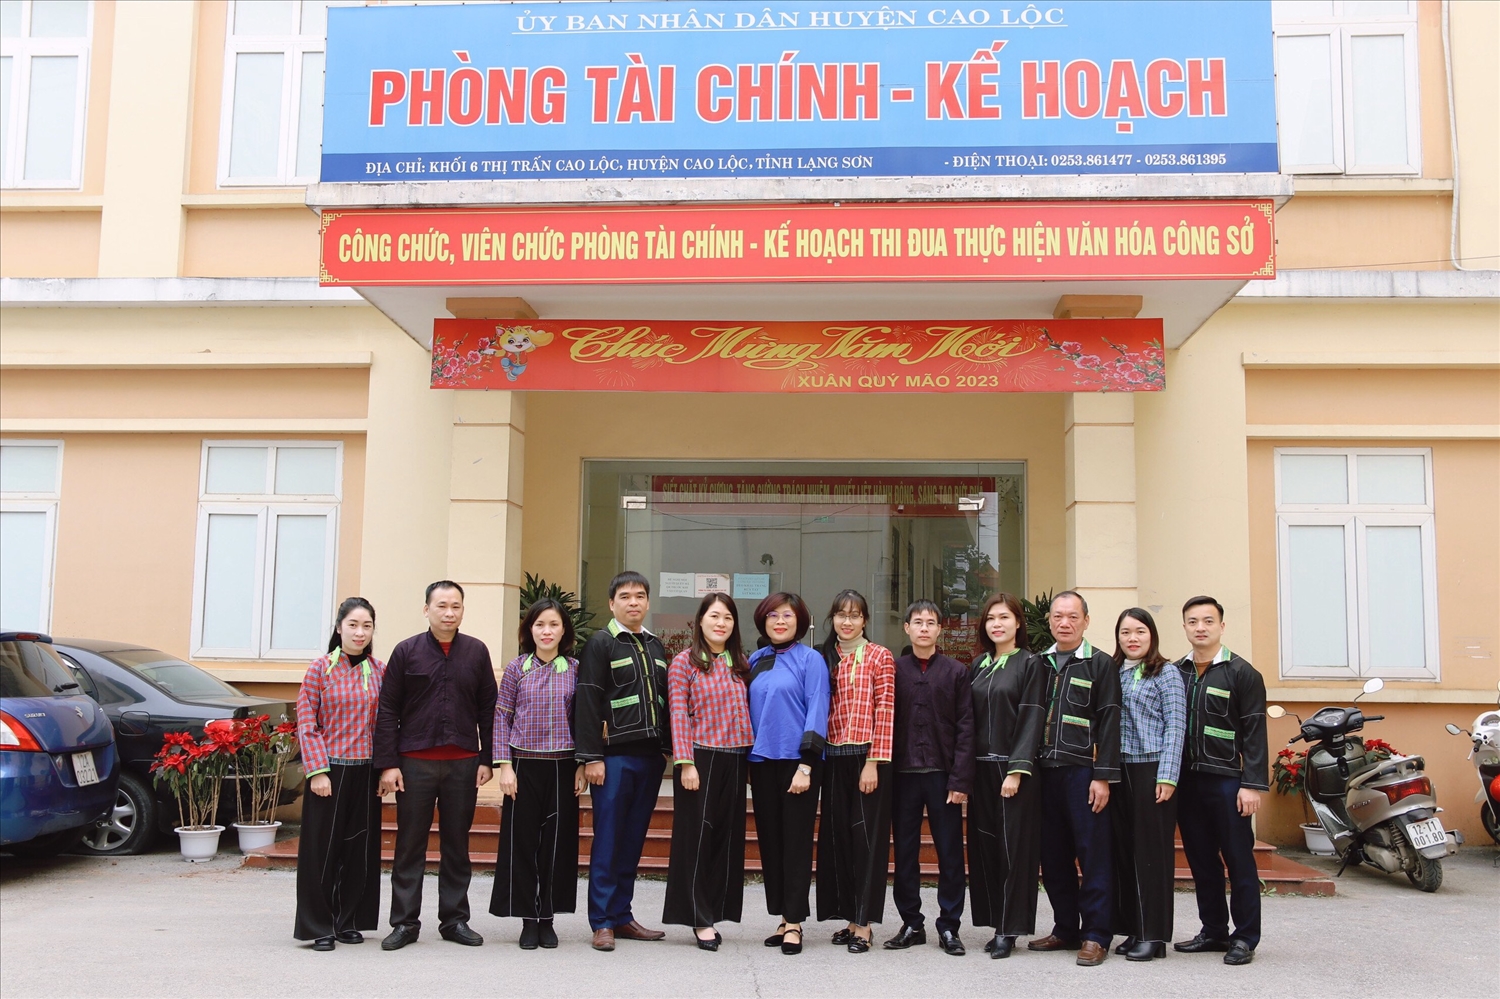 để bảo tồn bản sắc văn hóa dân tộc, tỉnh Lạng Sơn đã triển khai thực hiện đề án “Bảo tồn, phát huy trang phục truyền thống các dân tộc thiểu số Việt Nam trong giai đoạn hiện nay”